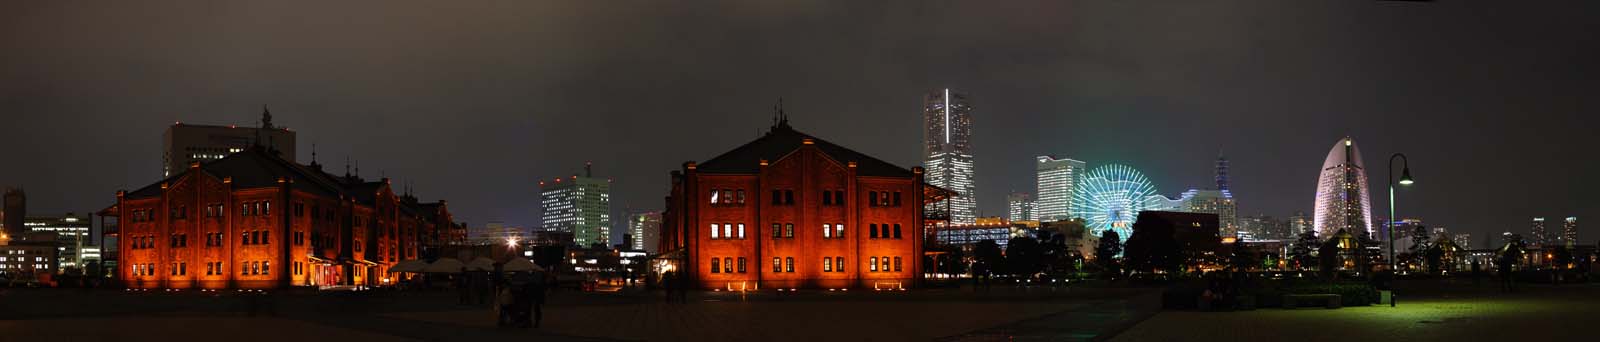 photo, la matire, libre, amnage, dcrivez, photo de la rserve,Yokohama entrept de la brique rouge, murez l'entrept, visiter des sites pittoresques tache, Front de mer, hritage de l'industrie de la modernisation